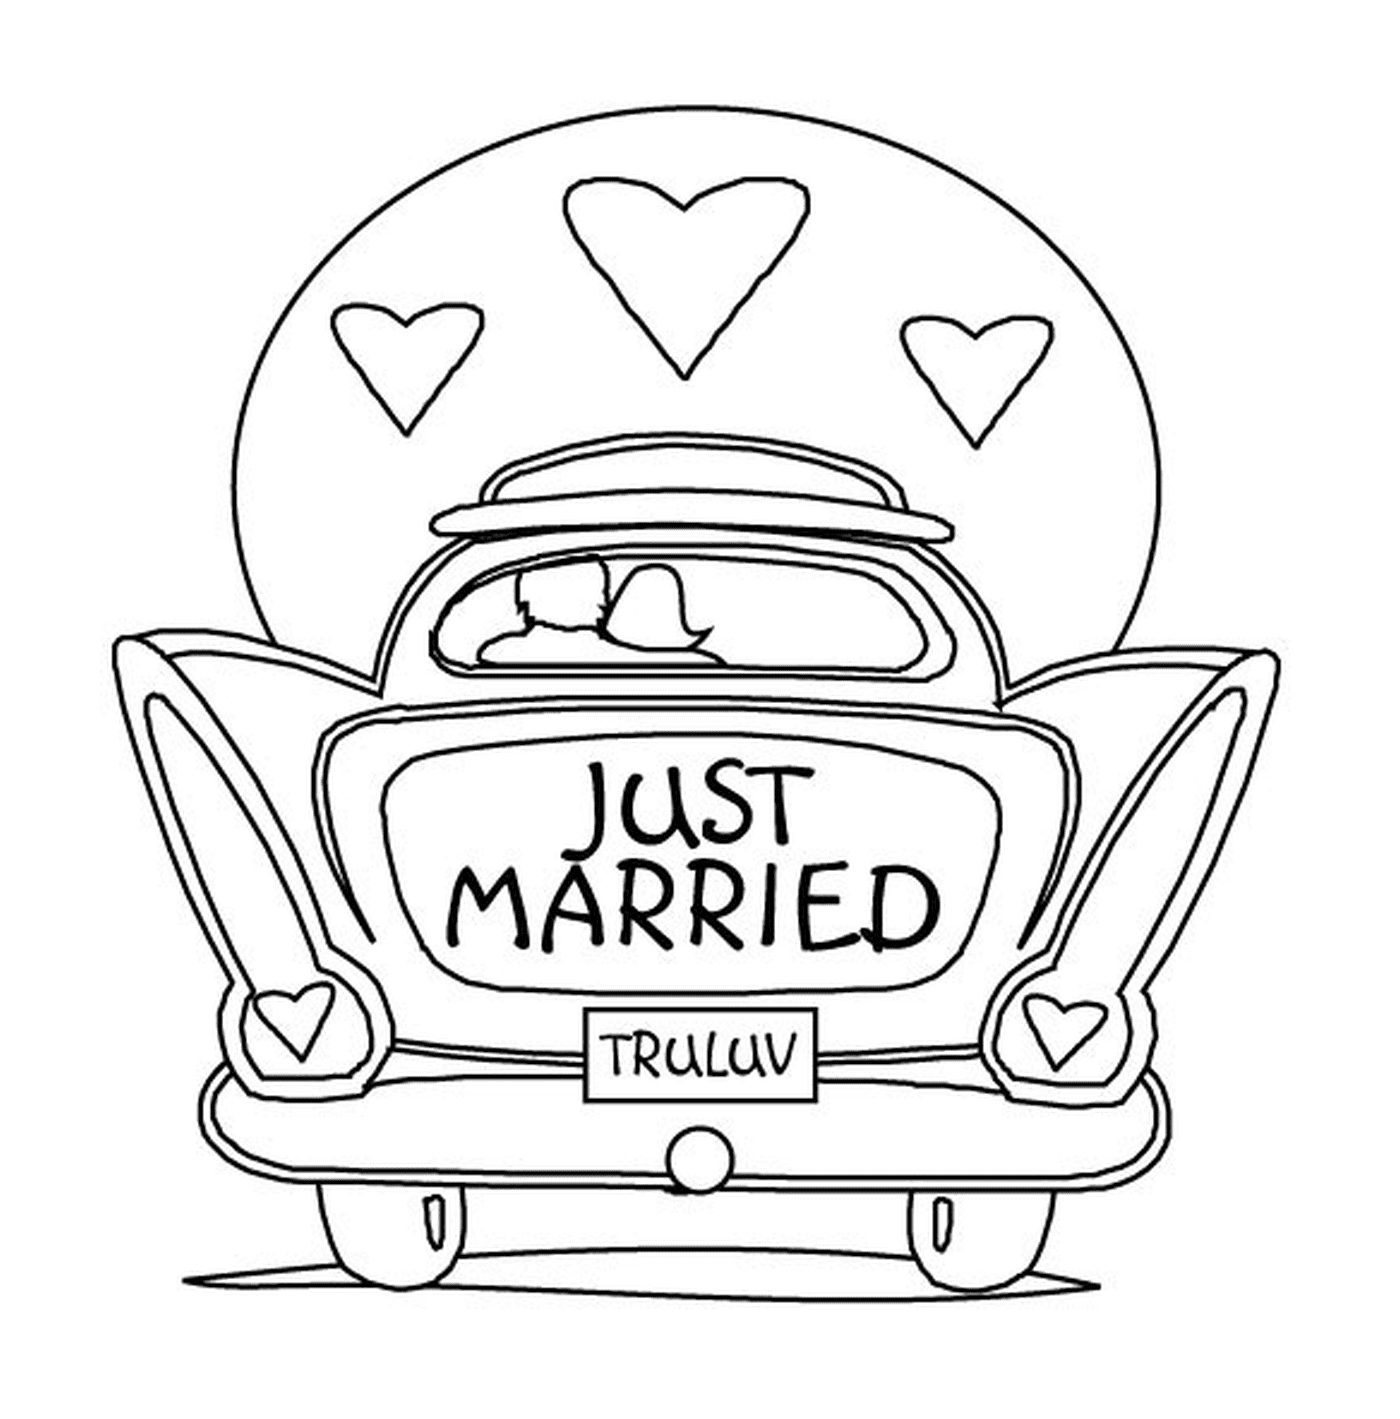  La boda del coche, acaba de casarse 